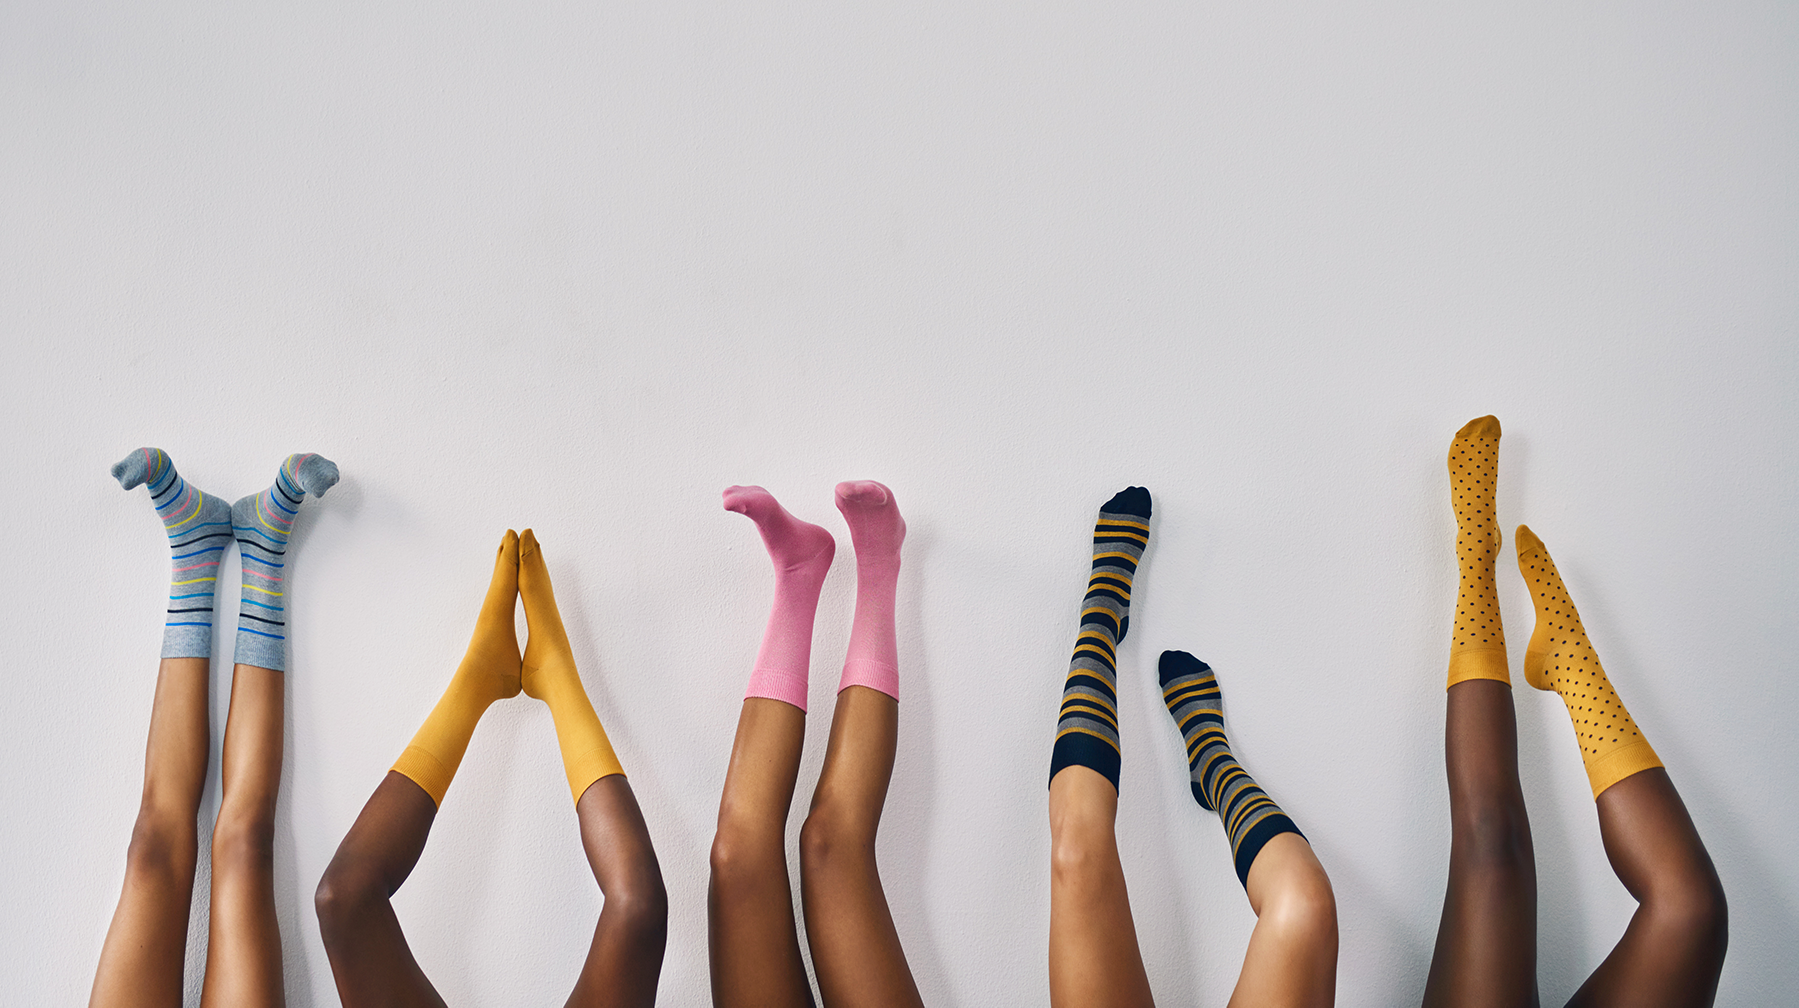 SOFTGAS 5 Pack Womens Wool Socks, Women Athletic Socks, Women Socks,  Suitable size 9-11,Christmas Gift for Women or Girl